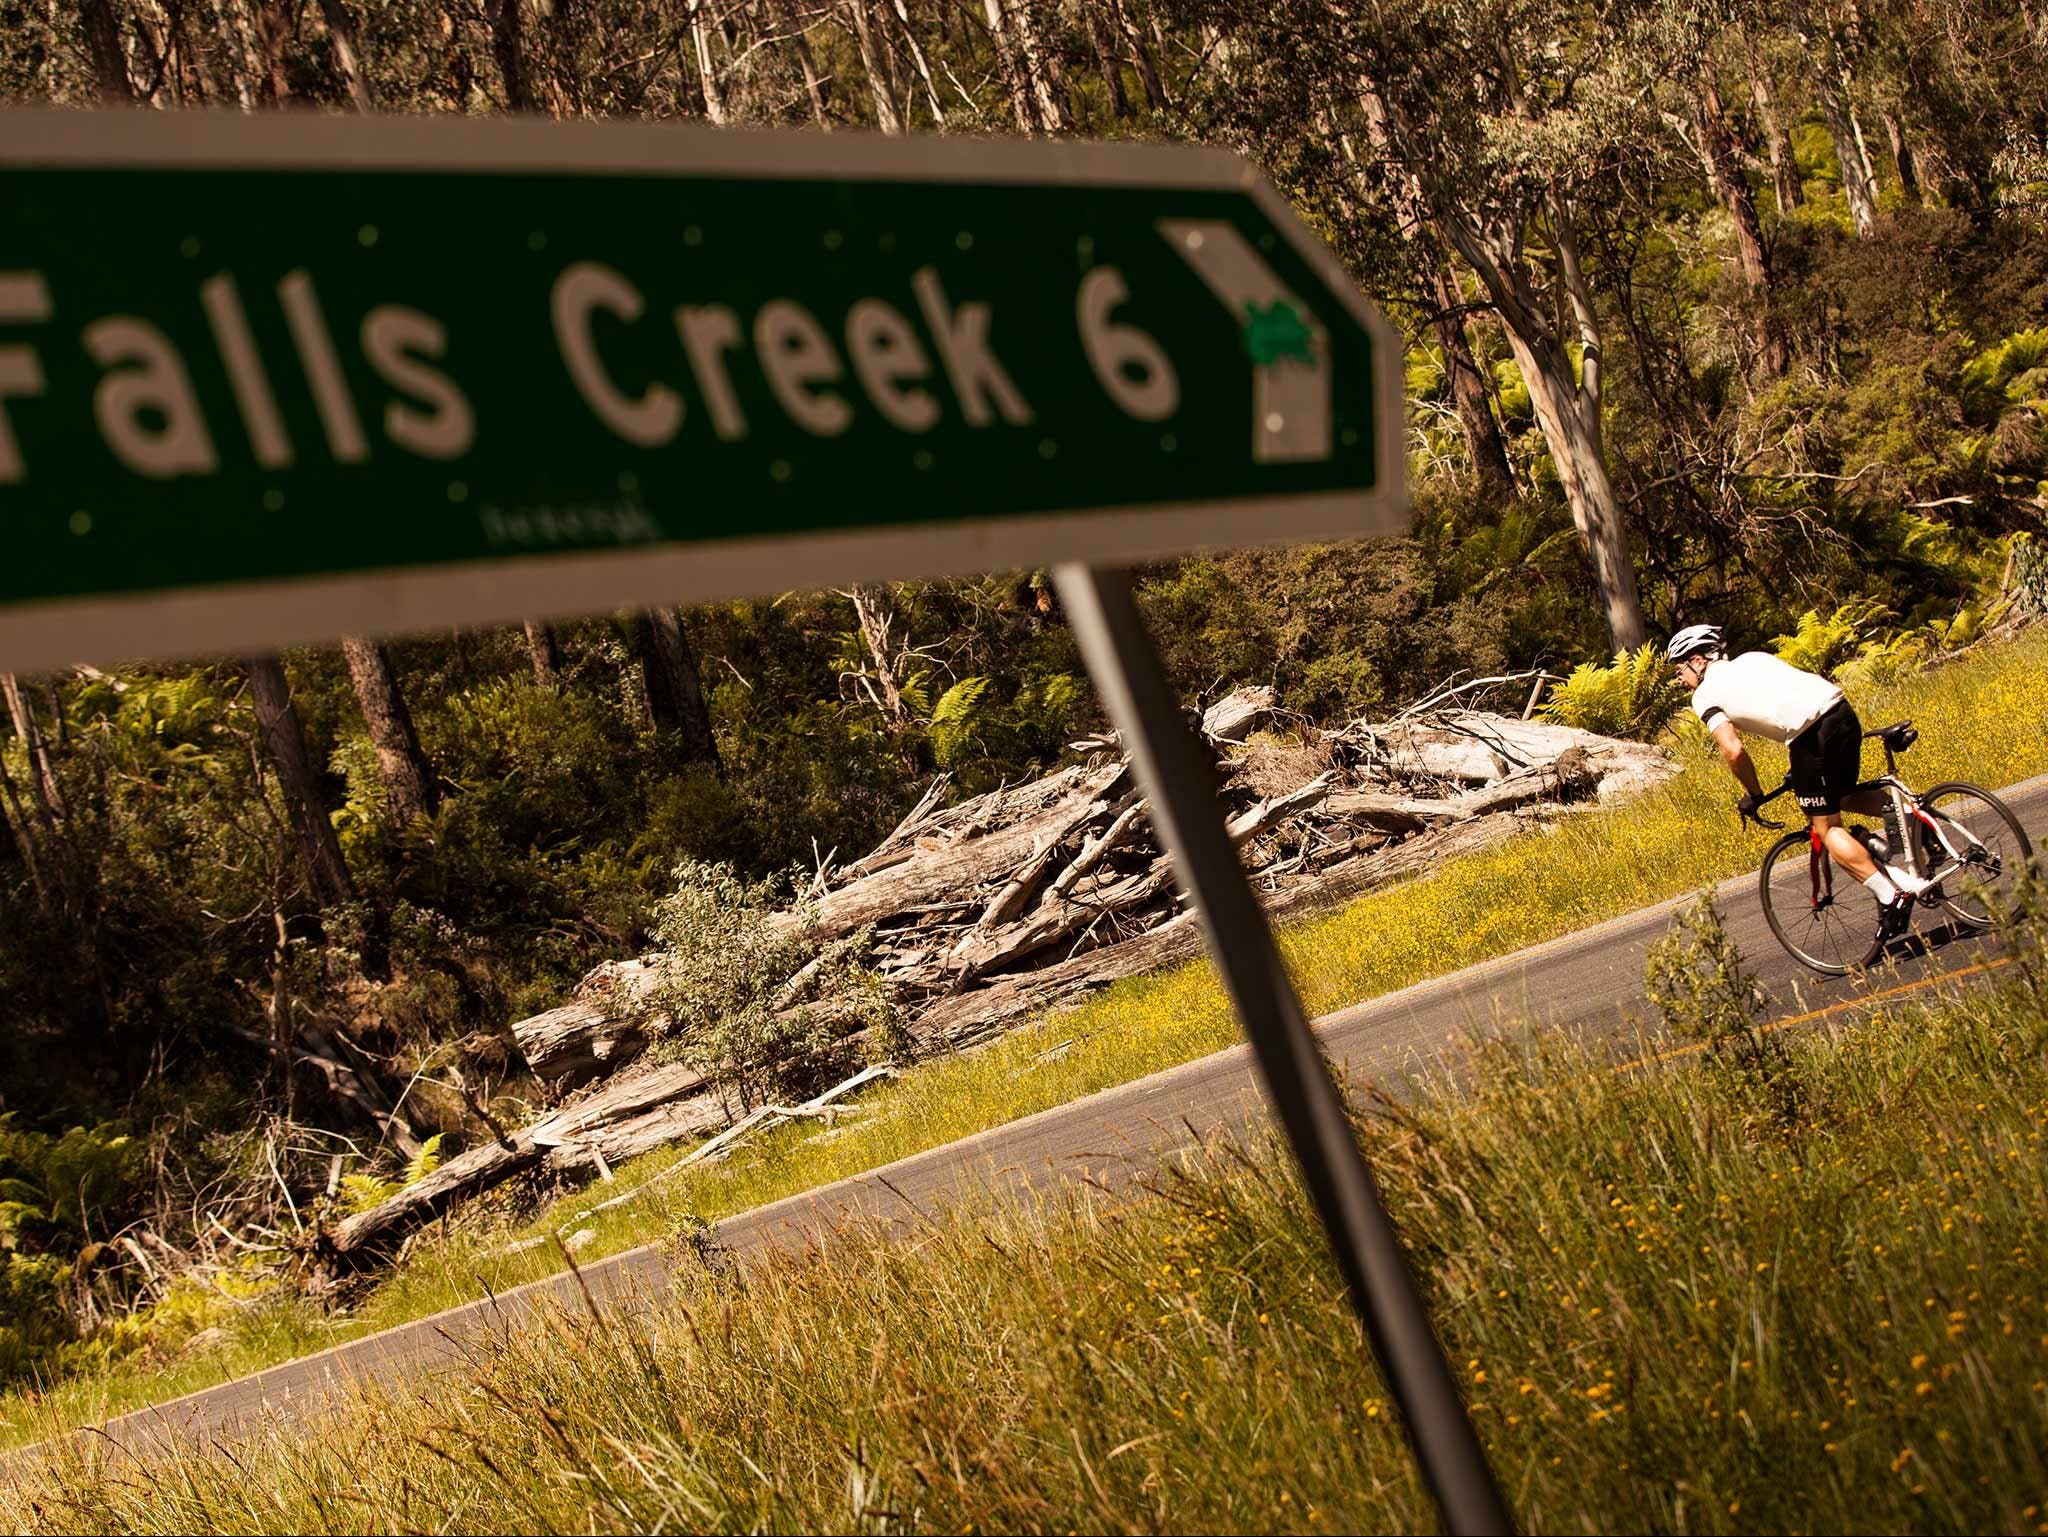 7 Peaks Ride - Falls Creek - Accommodation Brunswick Heads